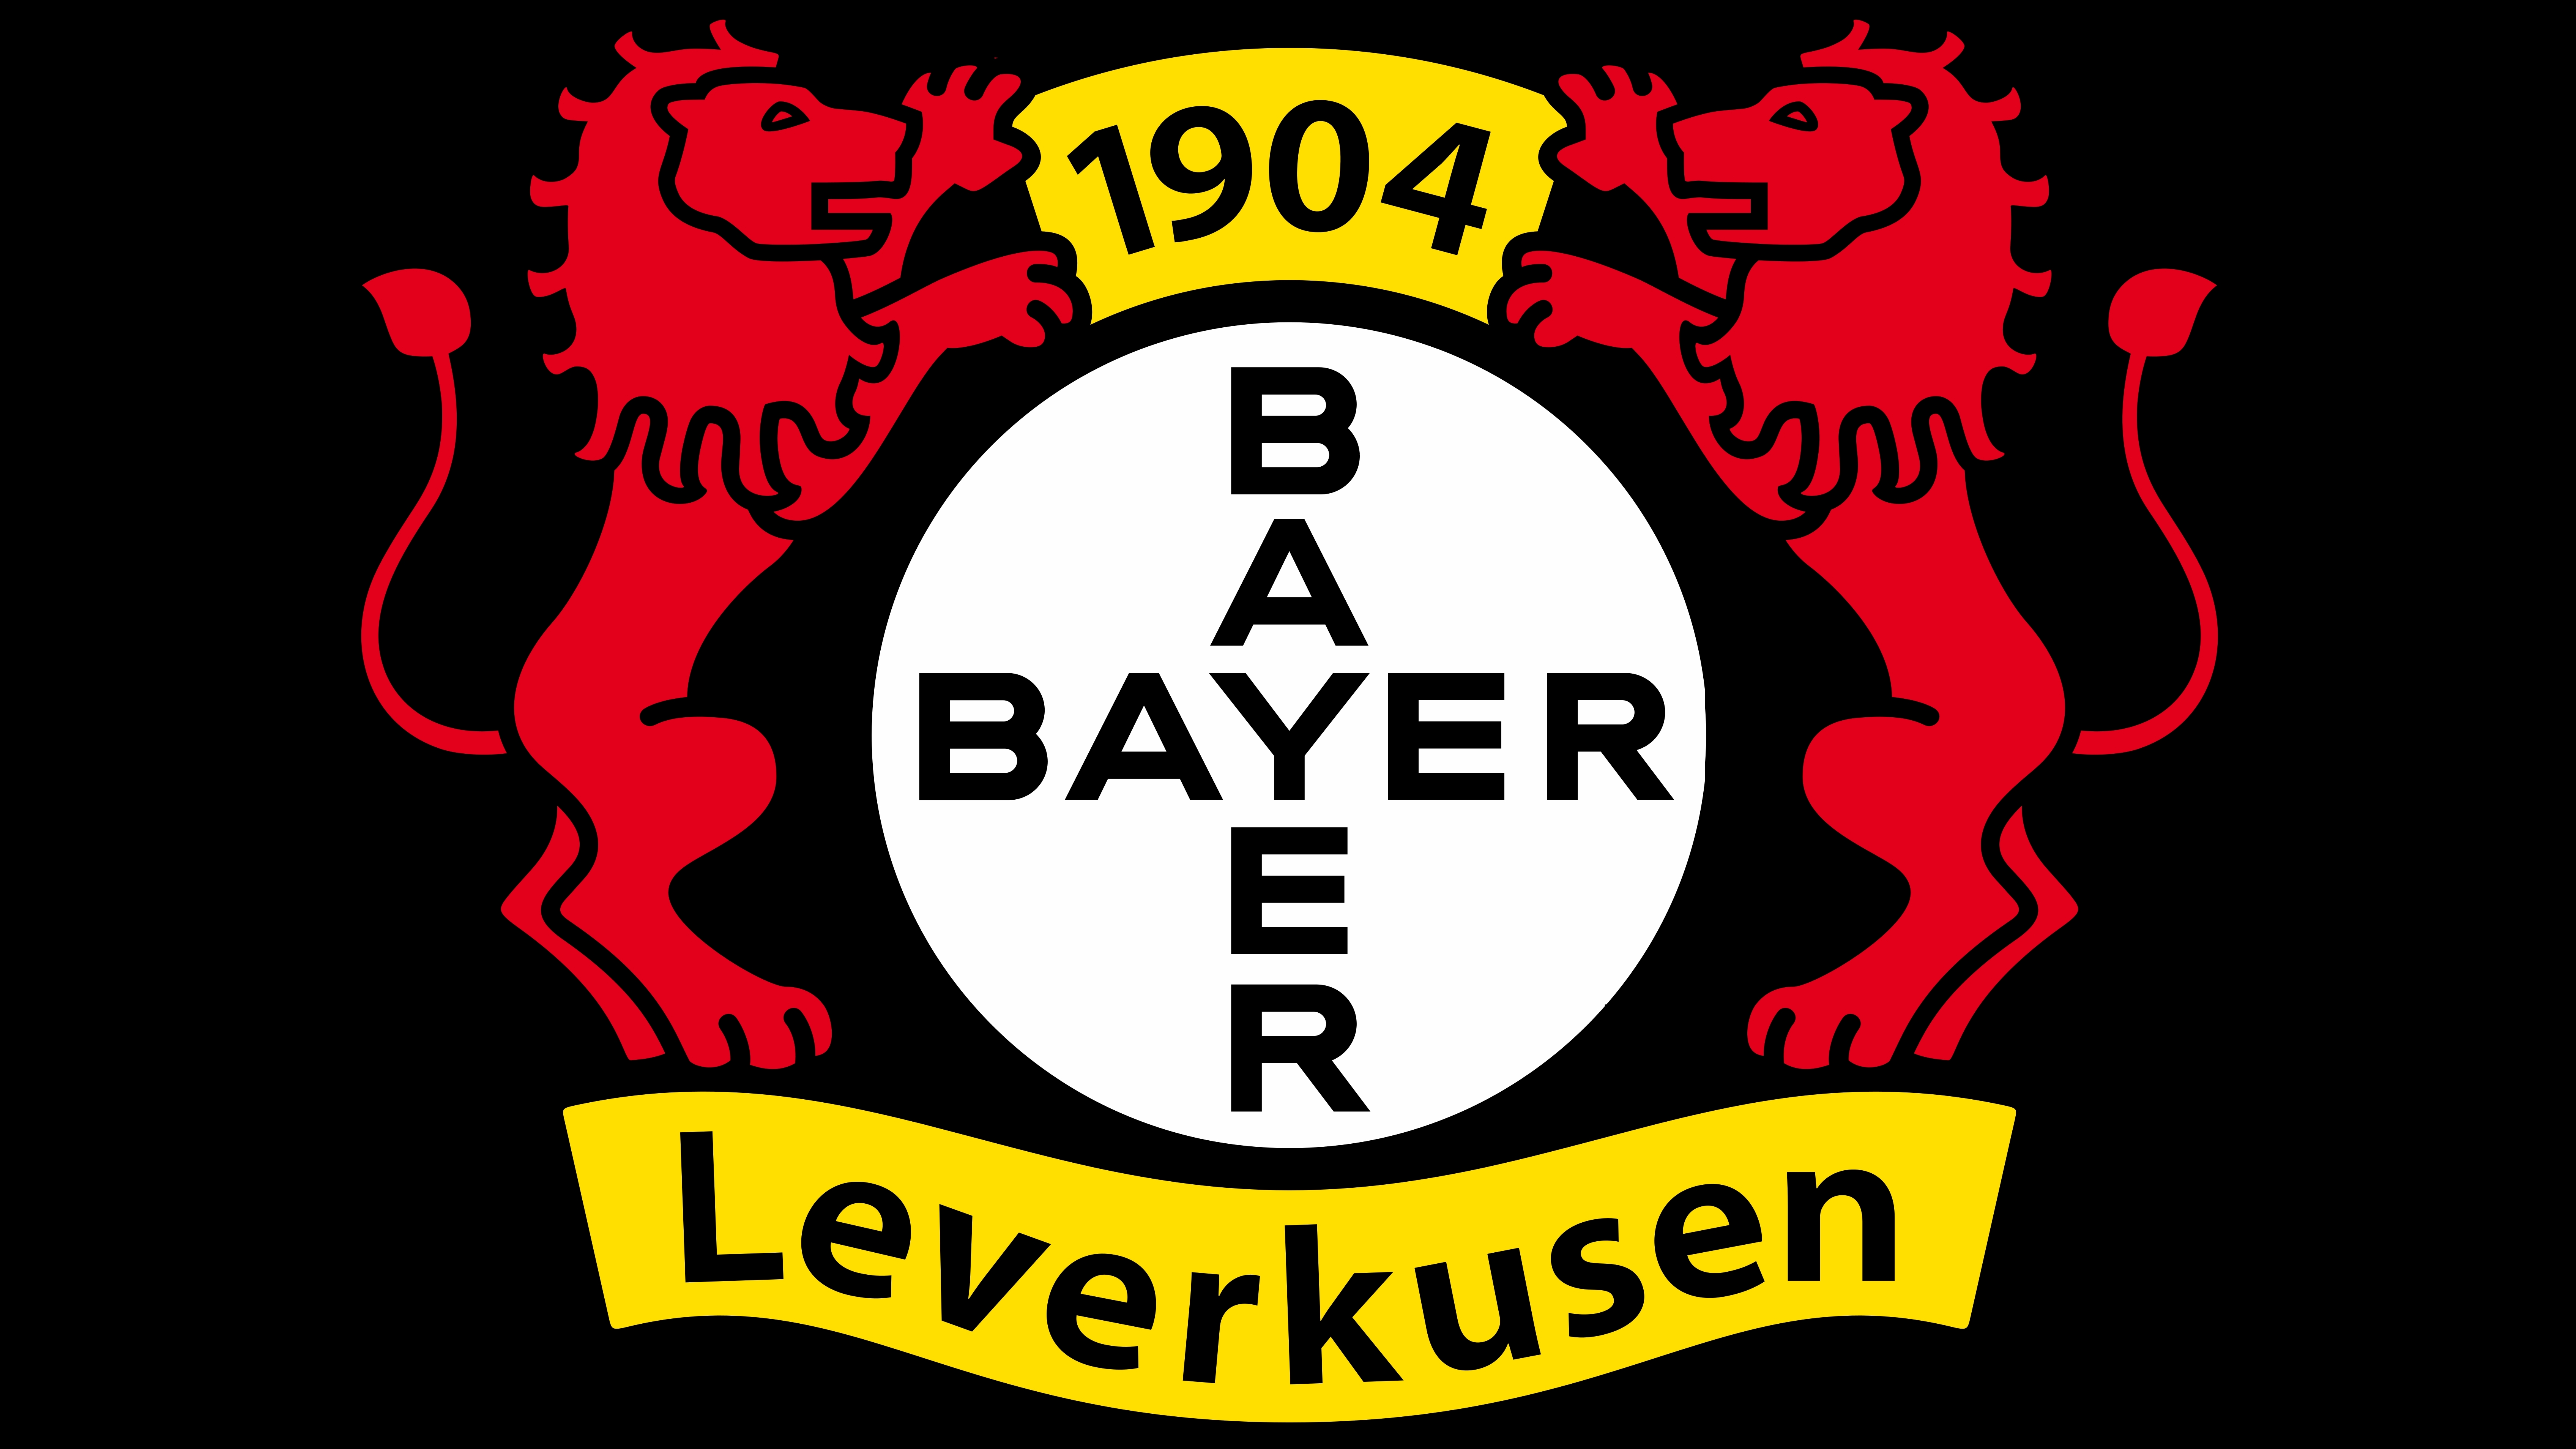 Buyer 04 Leverkusen Store